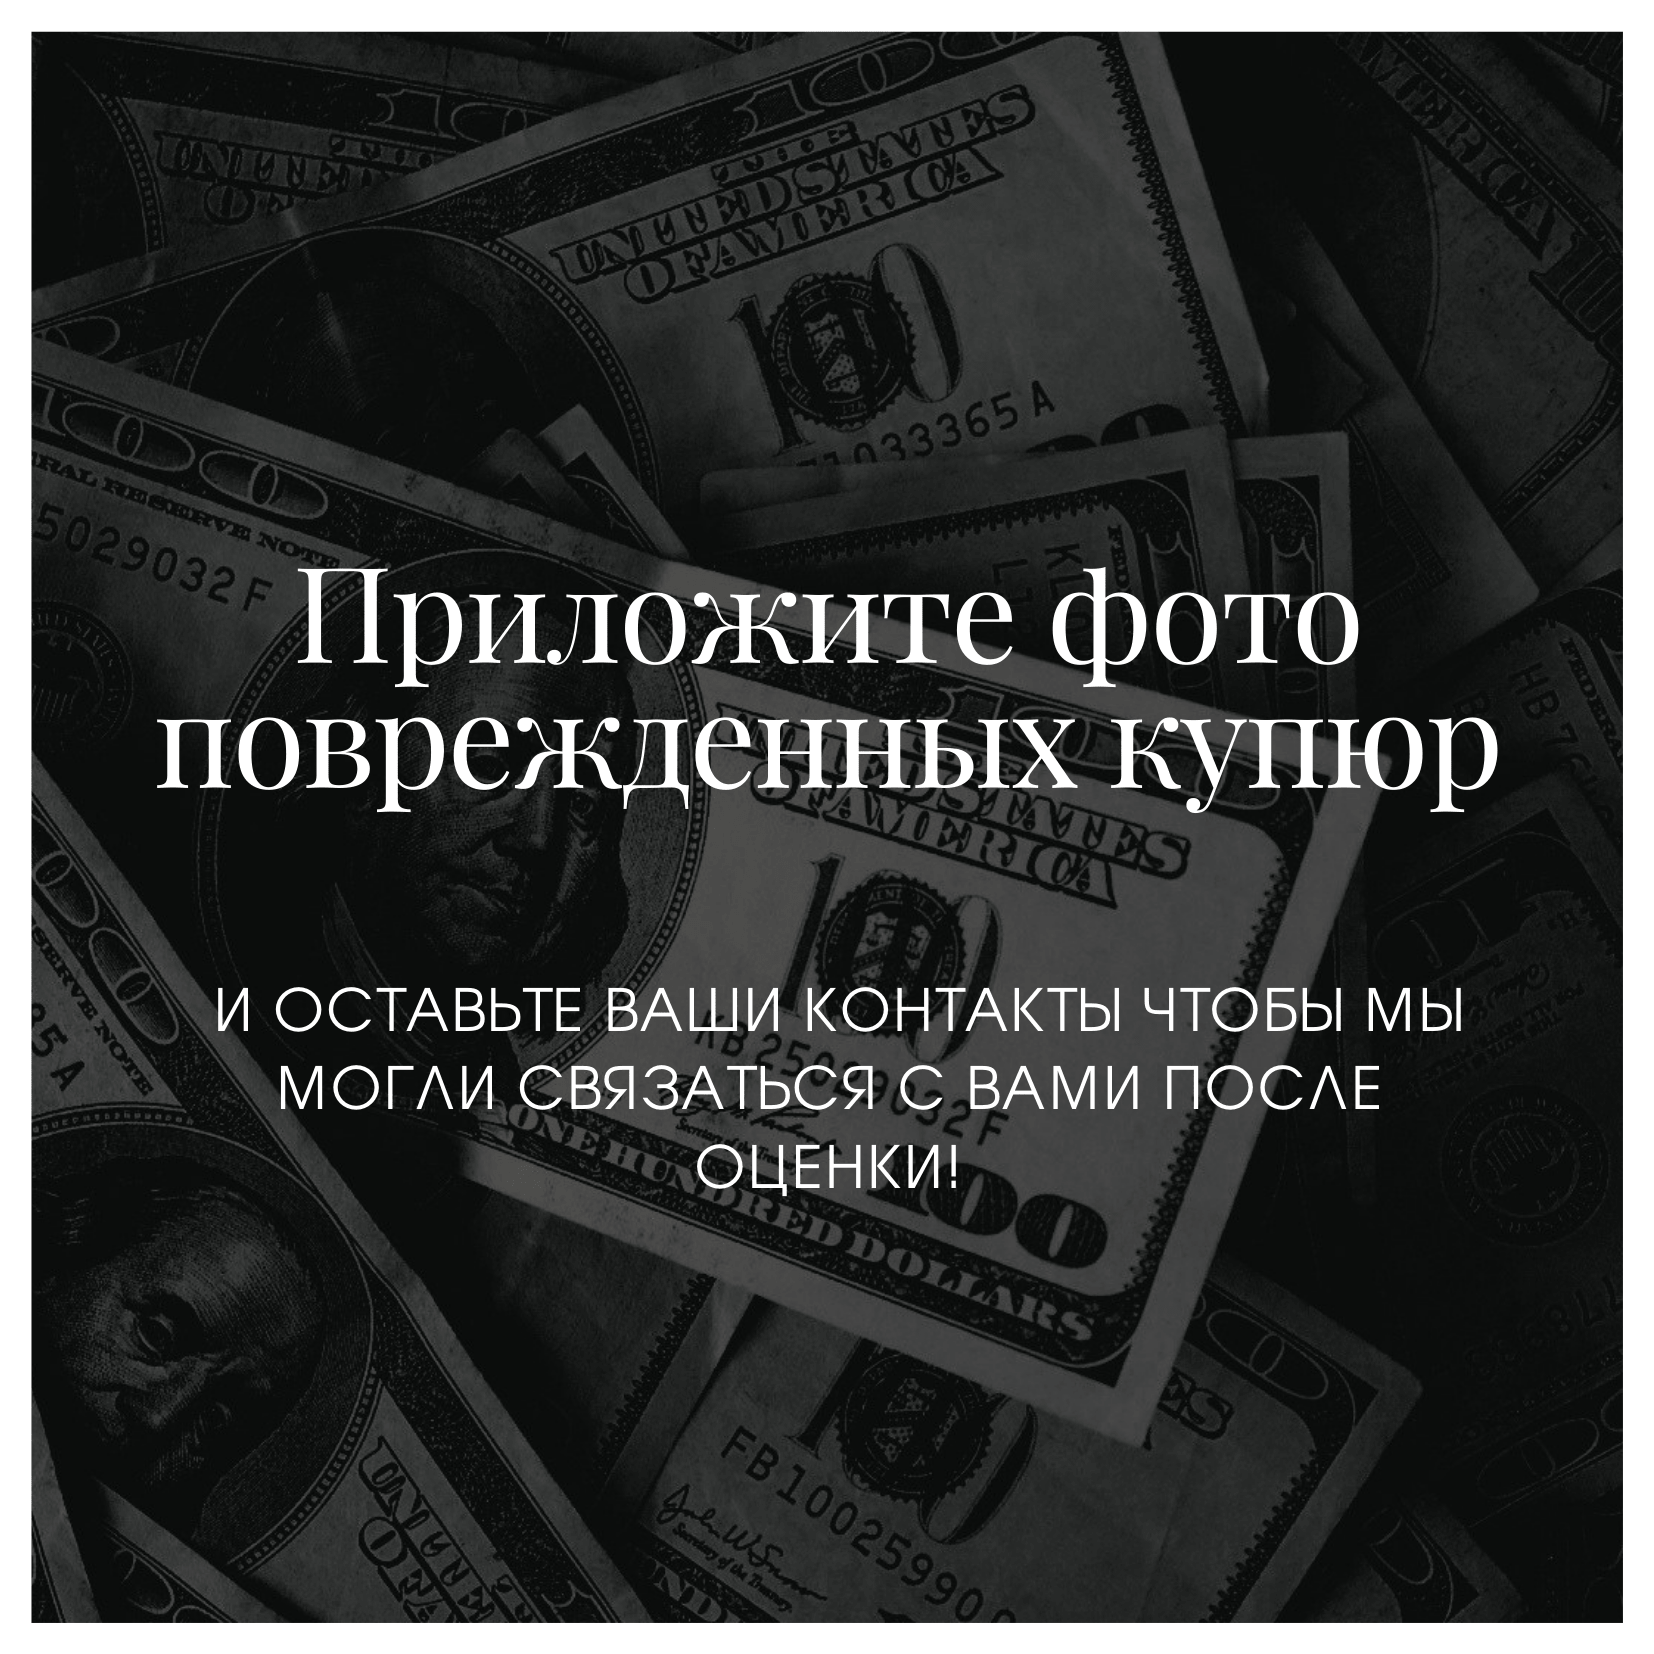 Обмен валют в москве карта биткоин курс в долларах онлайн